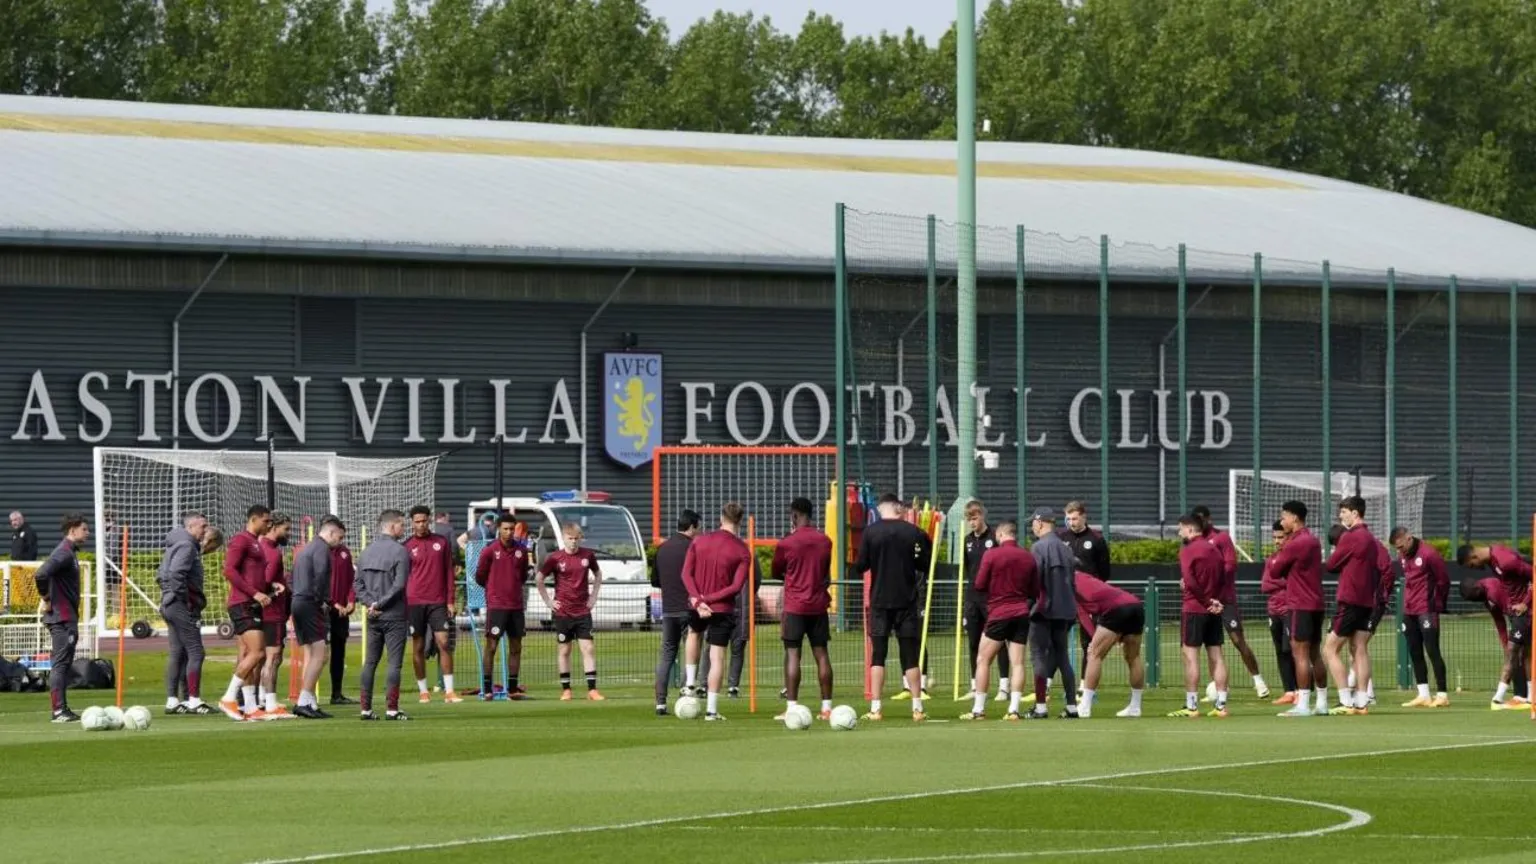 PA Aston Villa staff and players